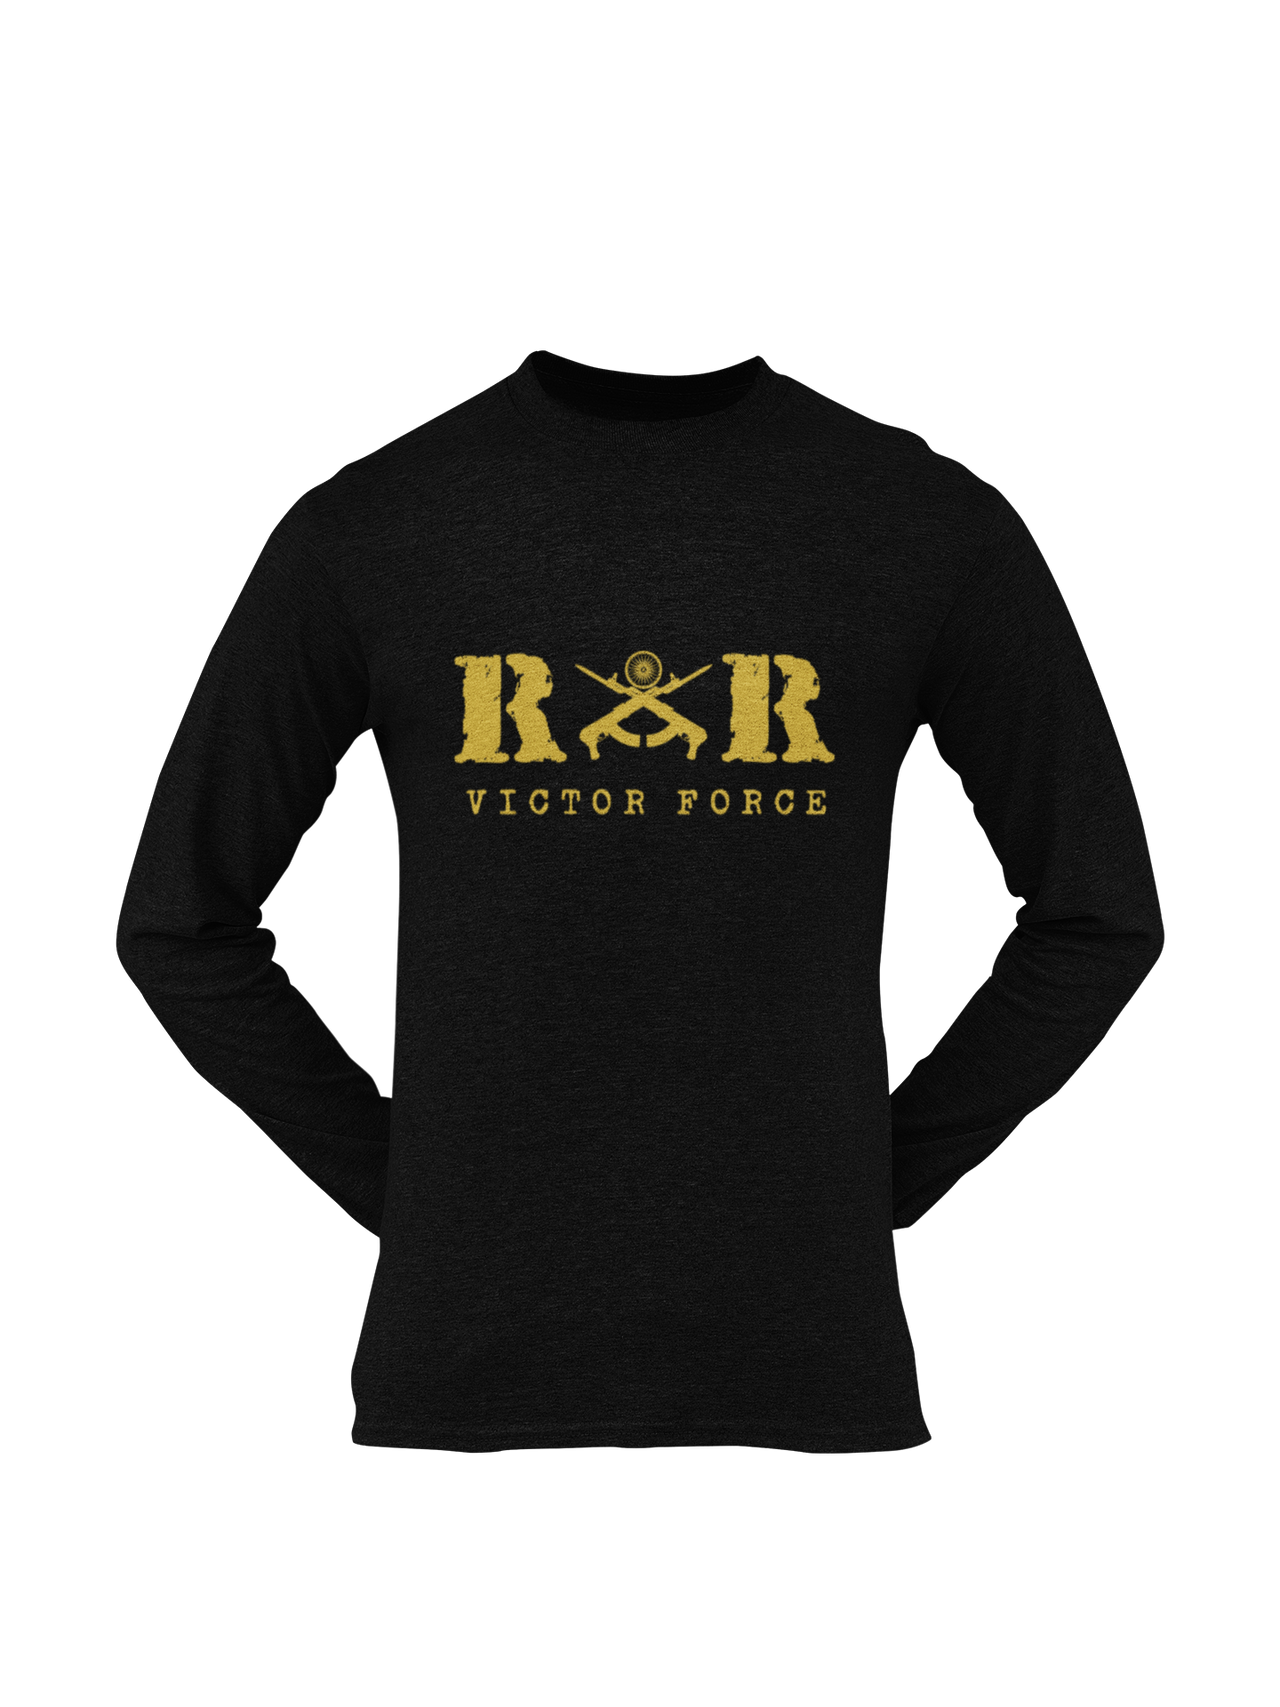 Rashtriya Rifles T-shirt - RR Victor Force ( Men)